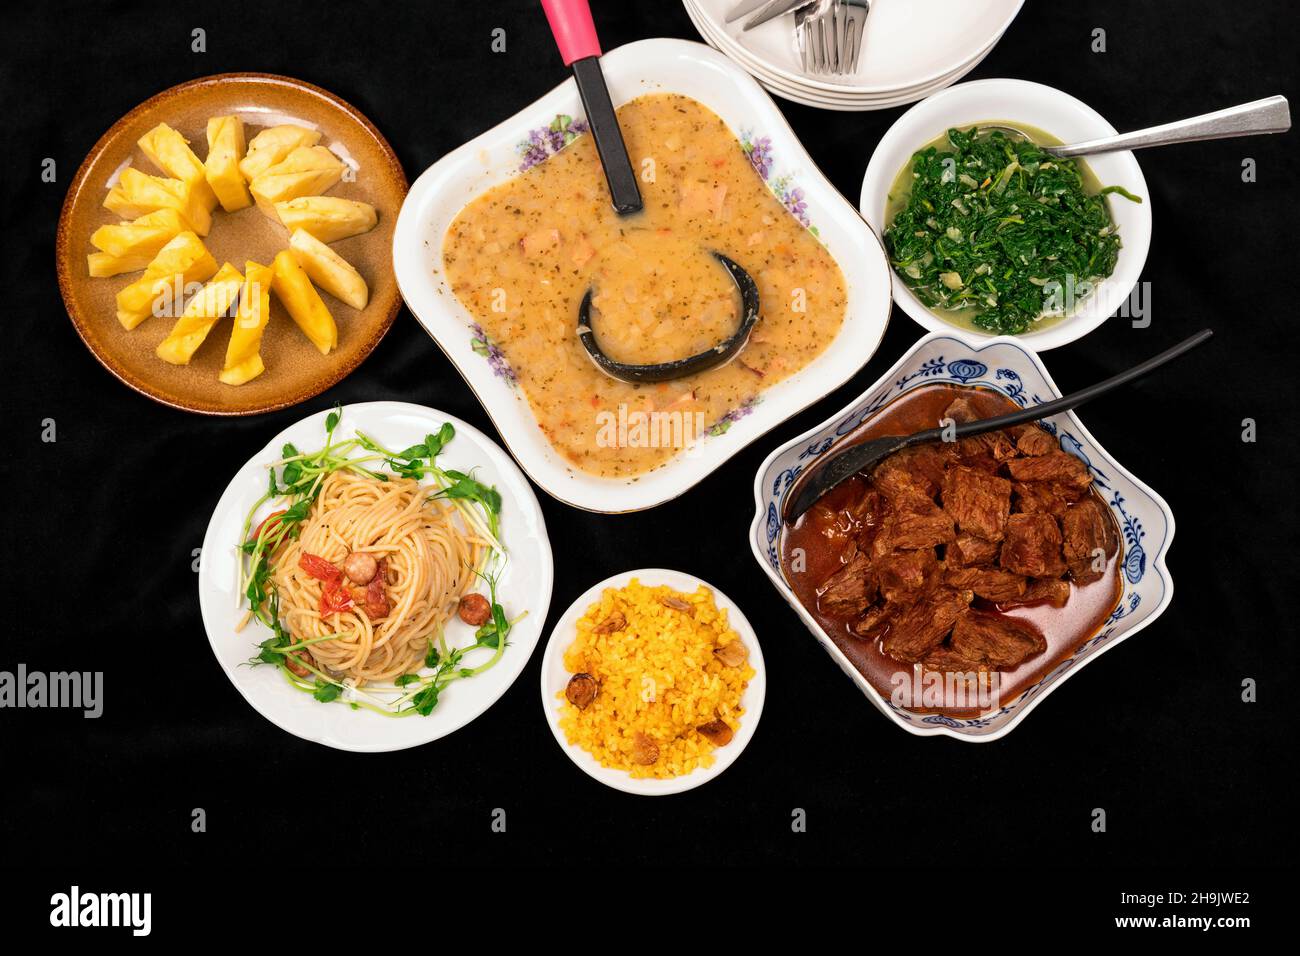 Umfangreiches Menü auf schwarzem Hintergrund. PEA-Suppe, gebackenes Rindfleisch, Reis, Spaghetti, geschmorter Spinat und rohe Ananas in einer Schüssel oder auf einem Teller. Stockfoto